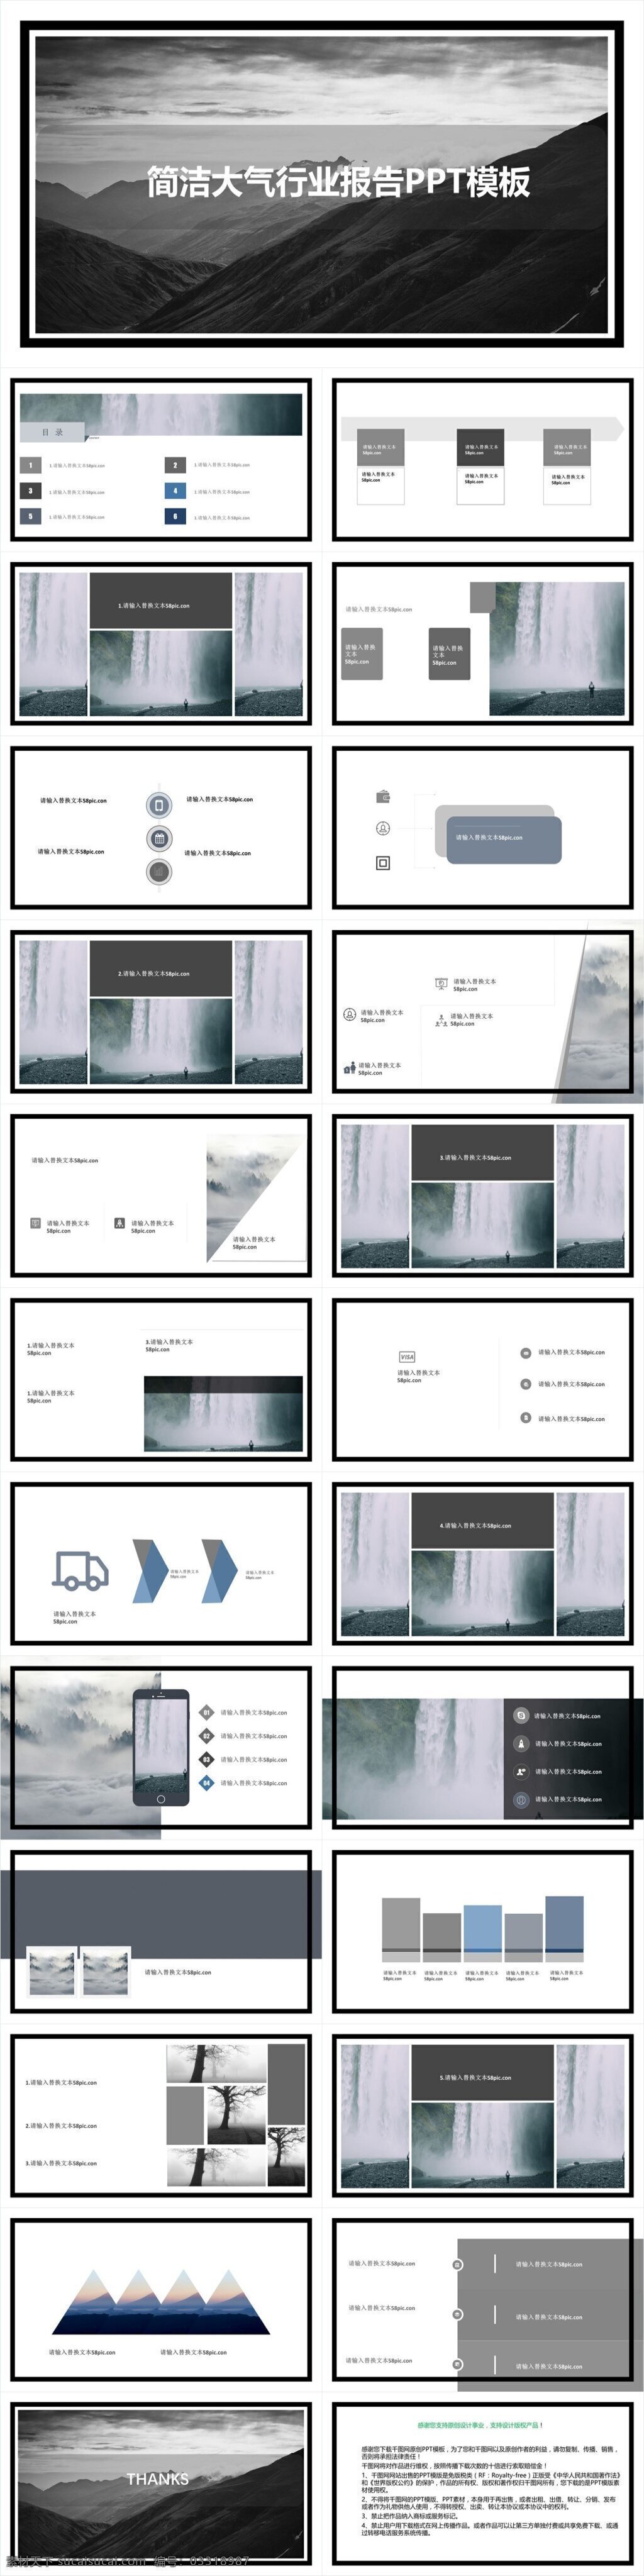 简洁 大气 行业报告 模板 经典 创意 图片展示